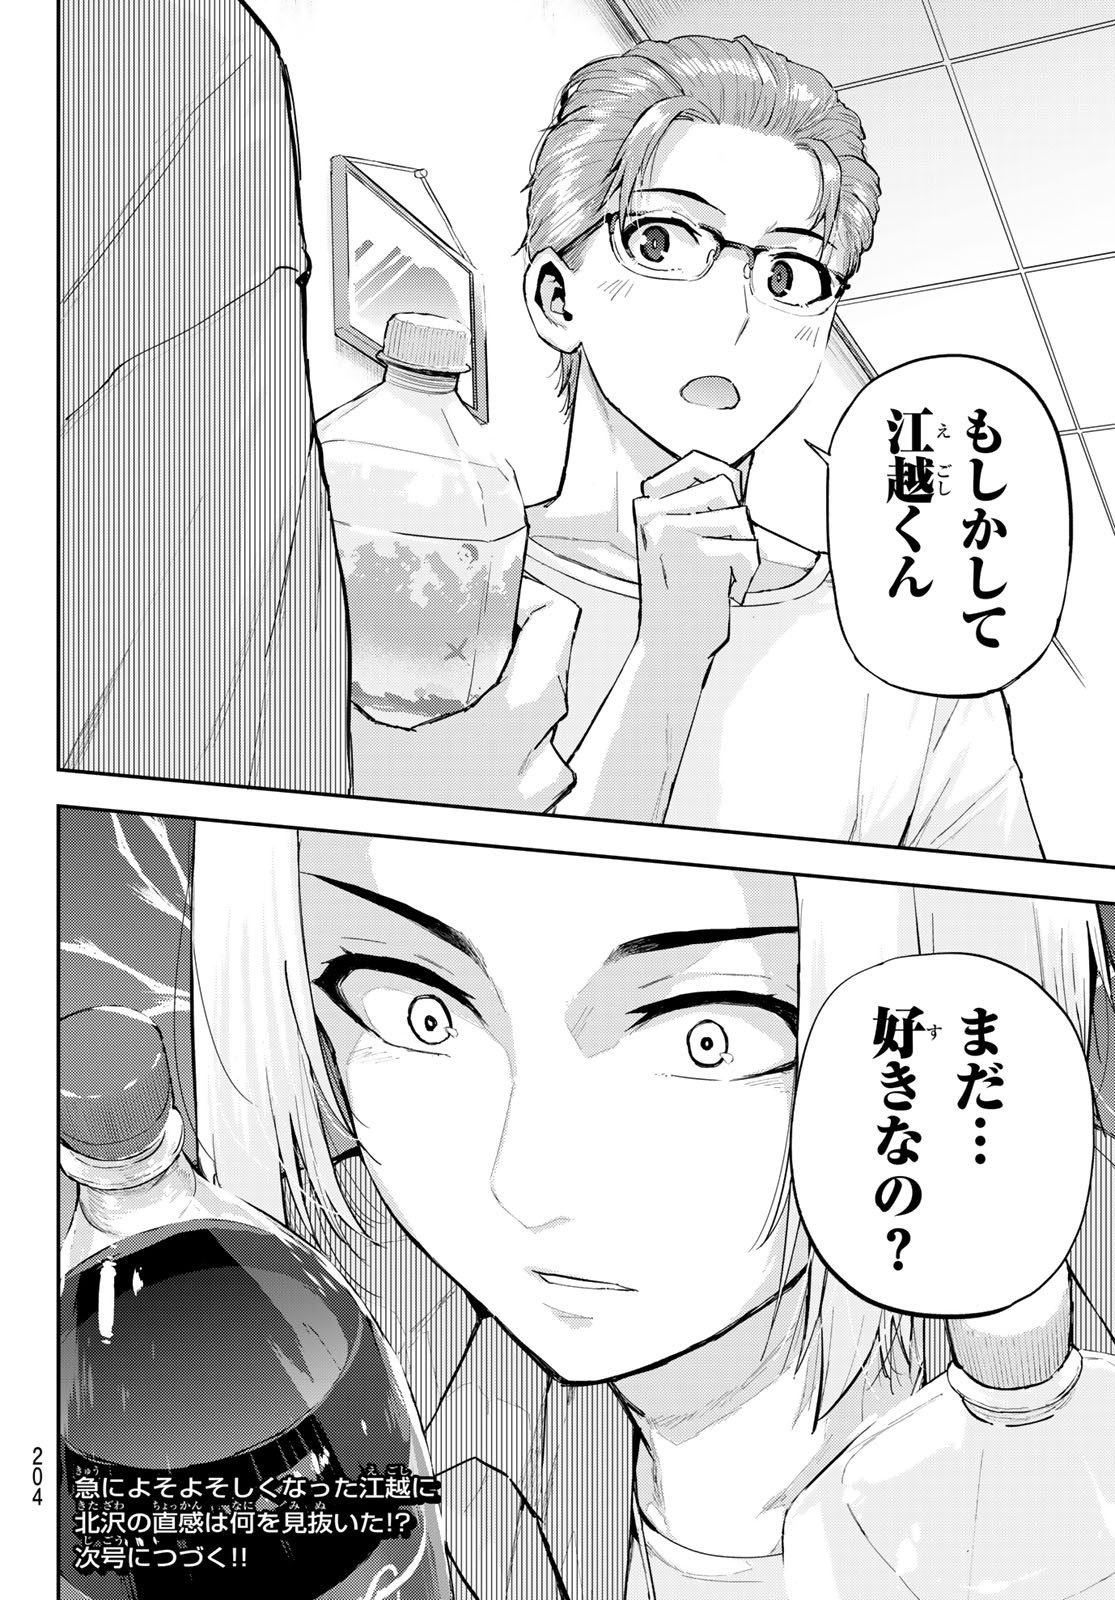 Kitazawa-kun wa A Class - Chapter 009 - Page 18